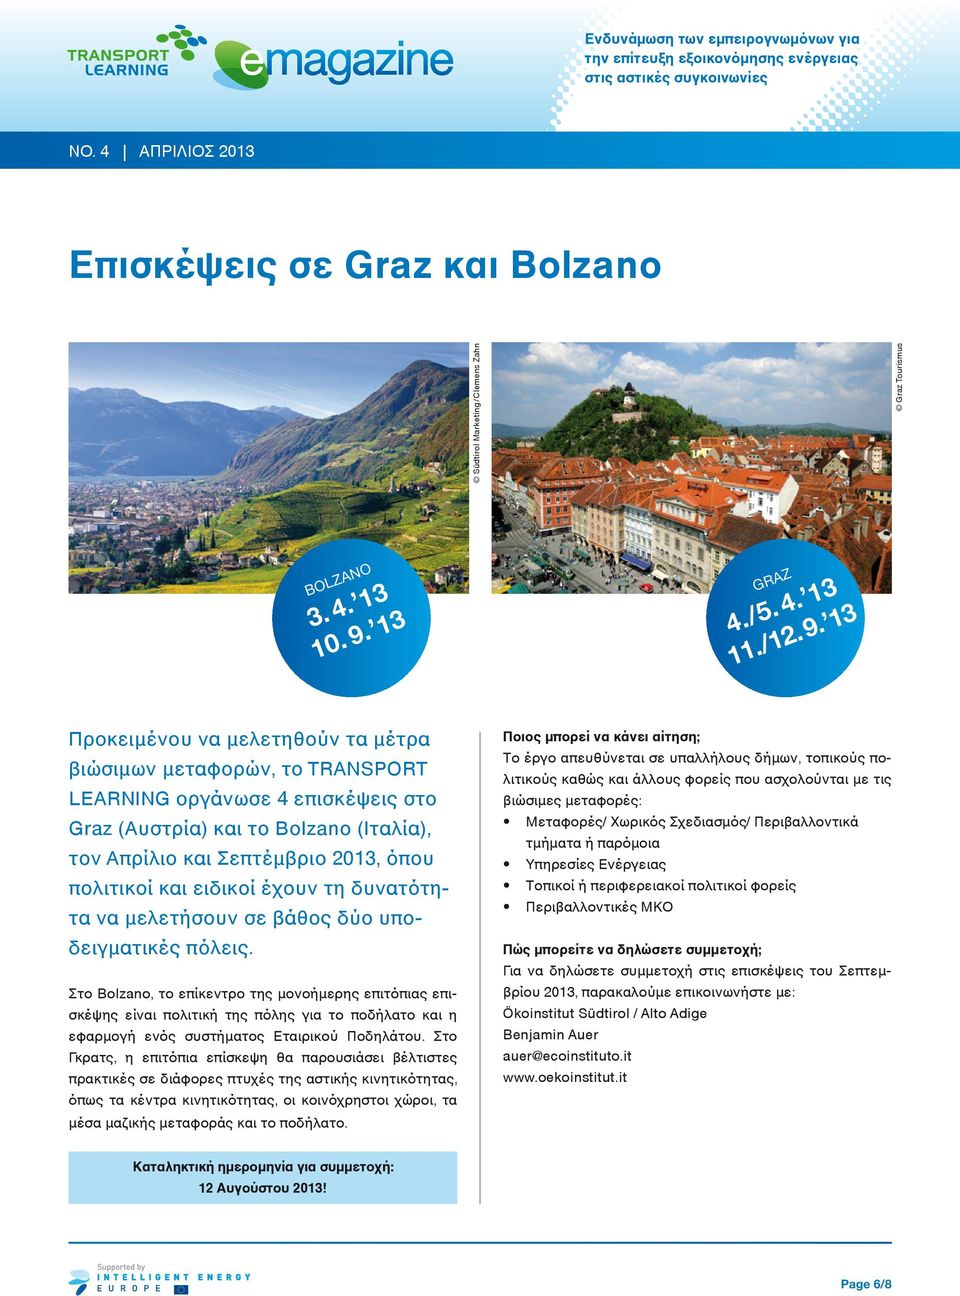 13 Προκειμένου να μελετηθούν τα μέτρα βιώσιμων μεταφορών, τo TRANSPORT LEARNING οργάνωσε 4 επισκέψεις στο Graz (Αυστρία) και το Bolzano (Ιταλία), τον Απρίλιο και Σεπτέμβριο 2013, όπου πολιτικοί και